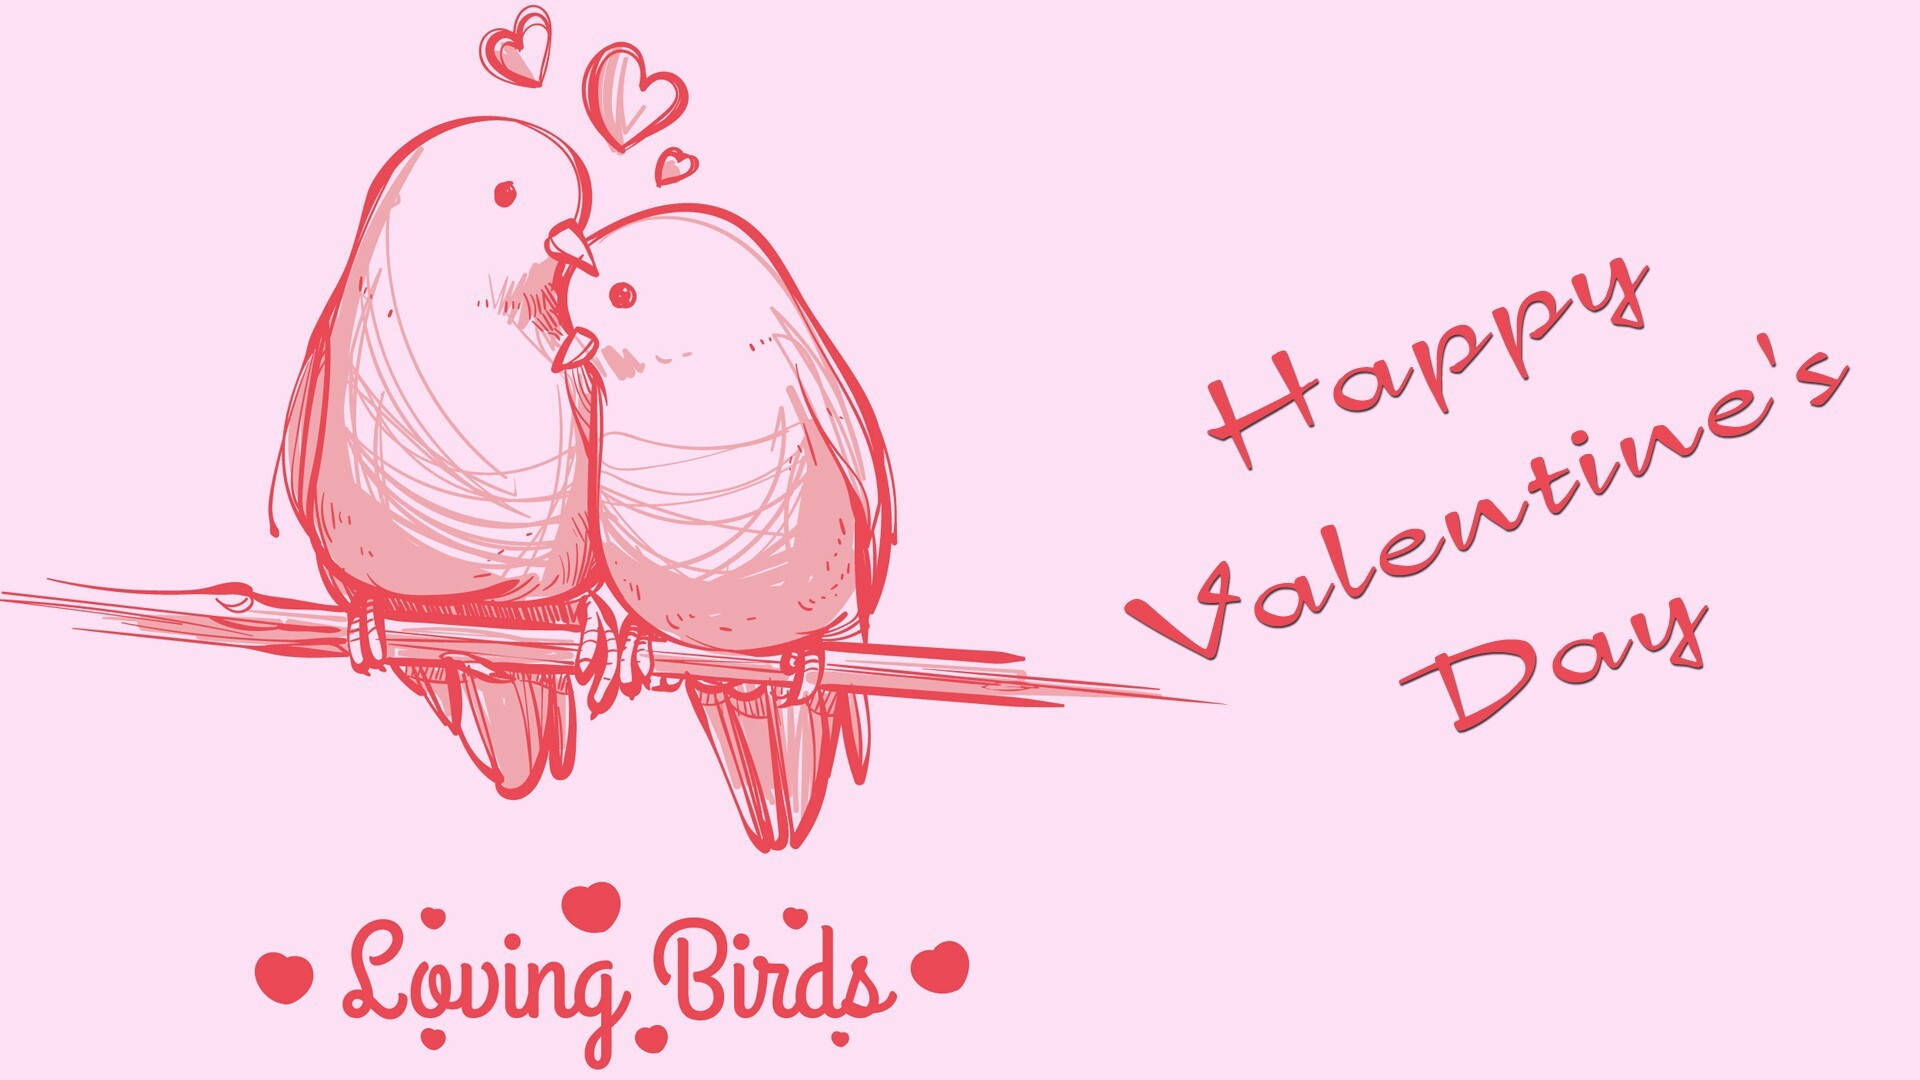 Pájarosrosados Del Amor De San Valentín Fondo de pantalla